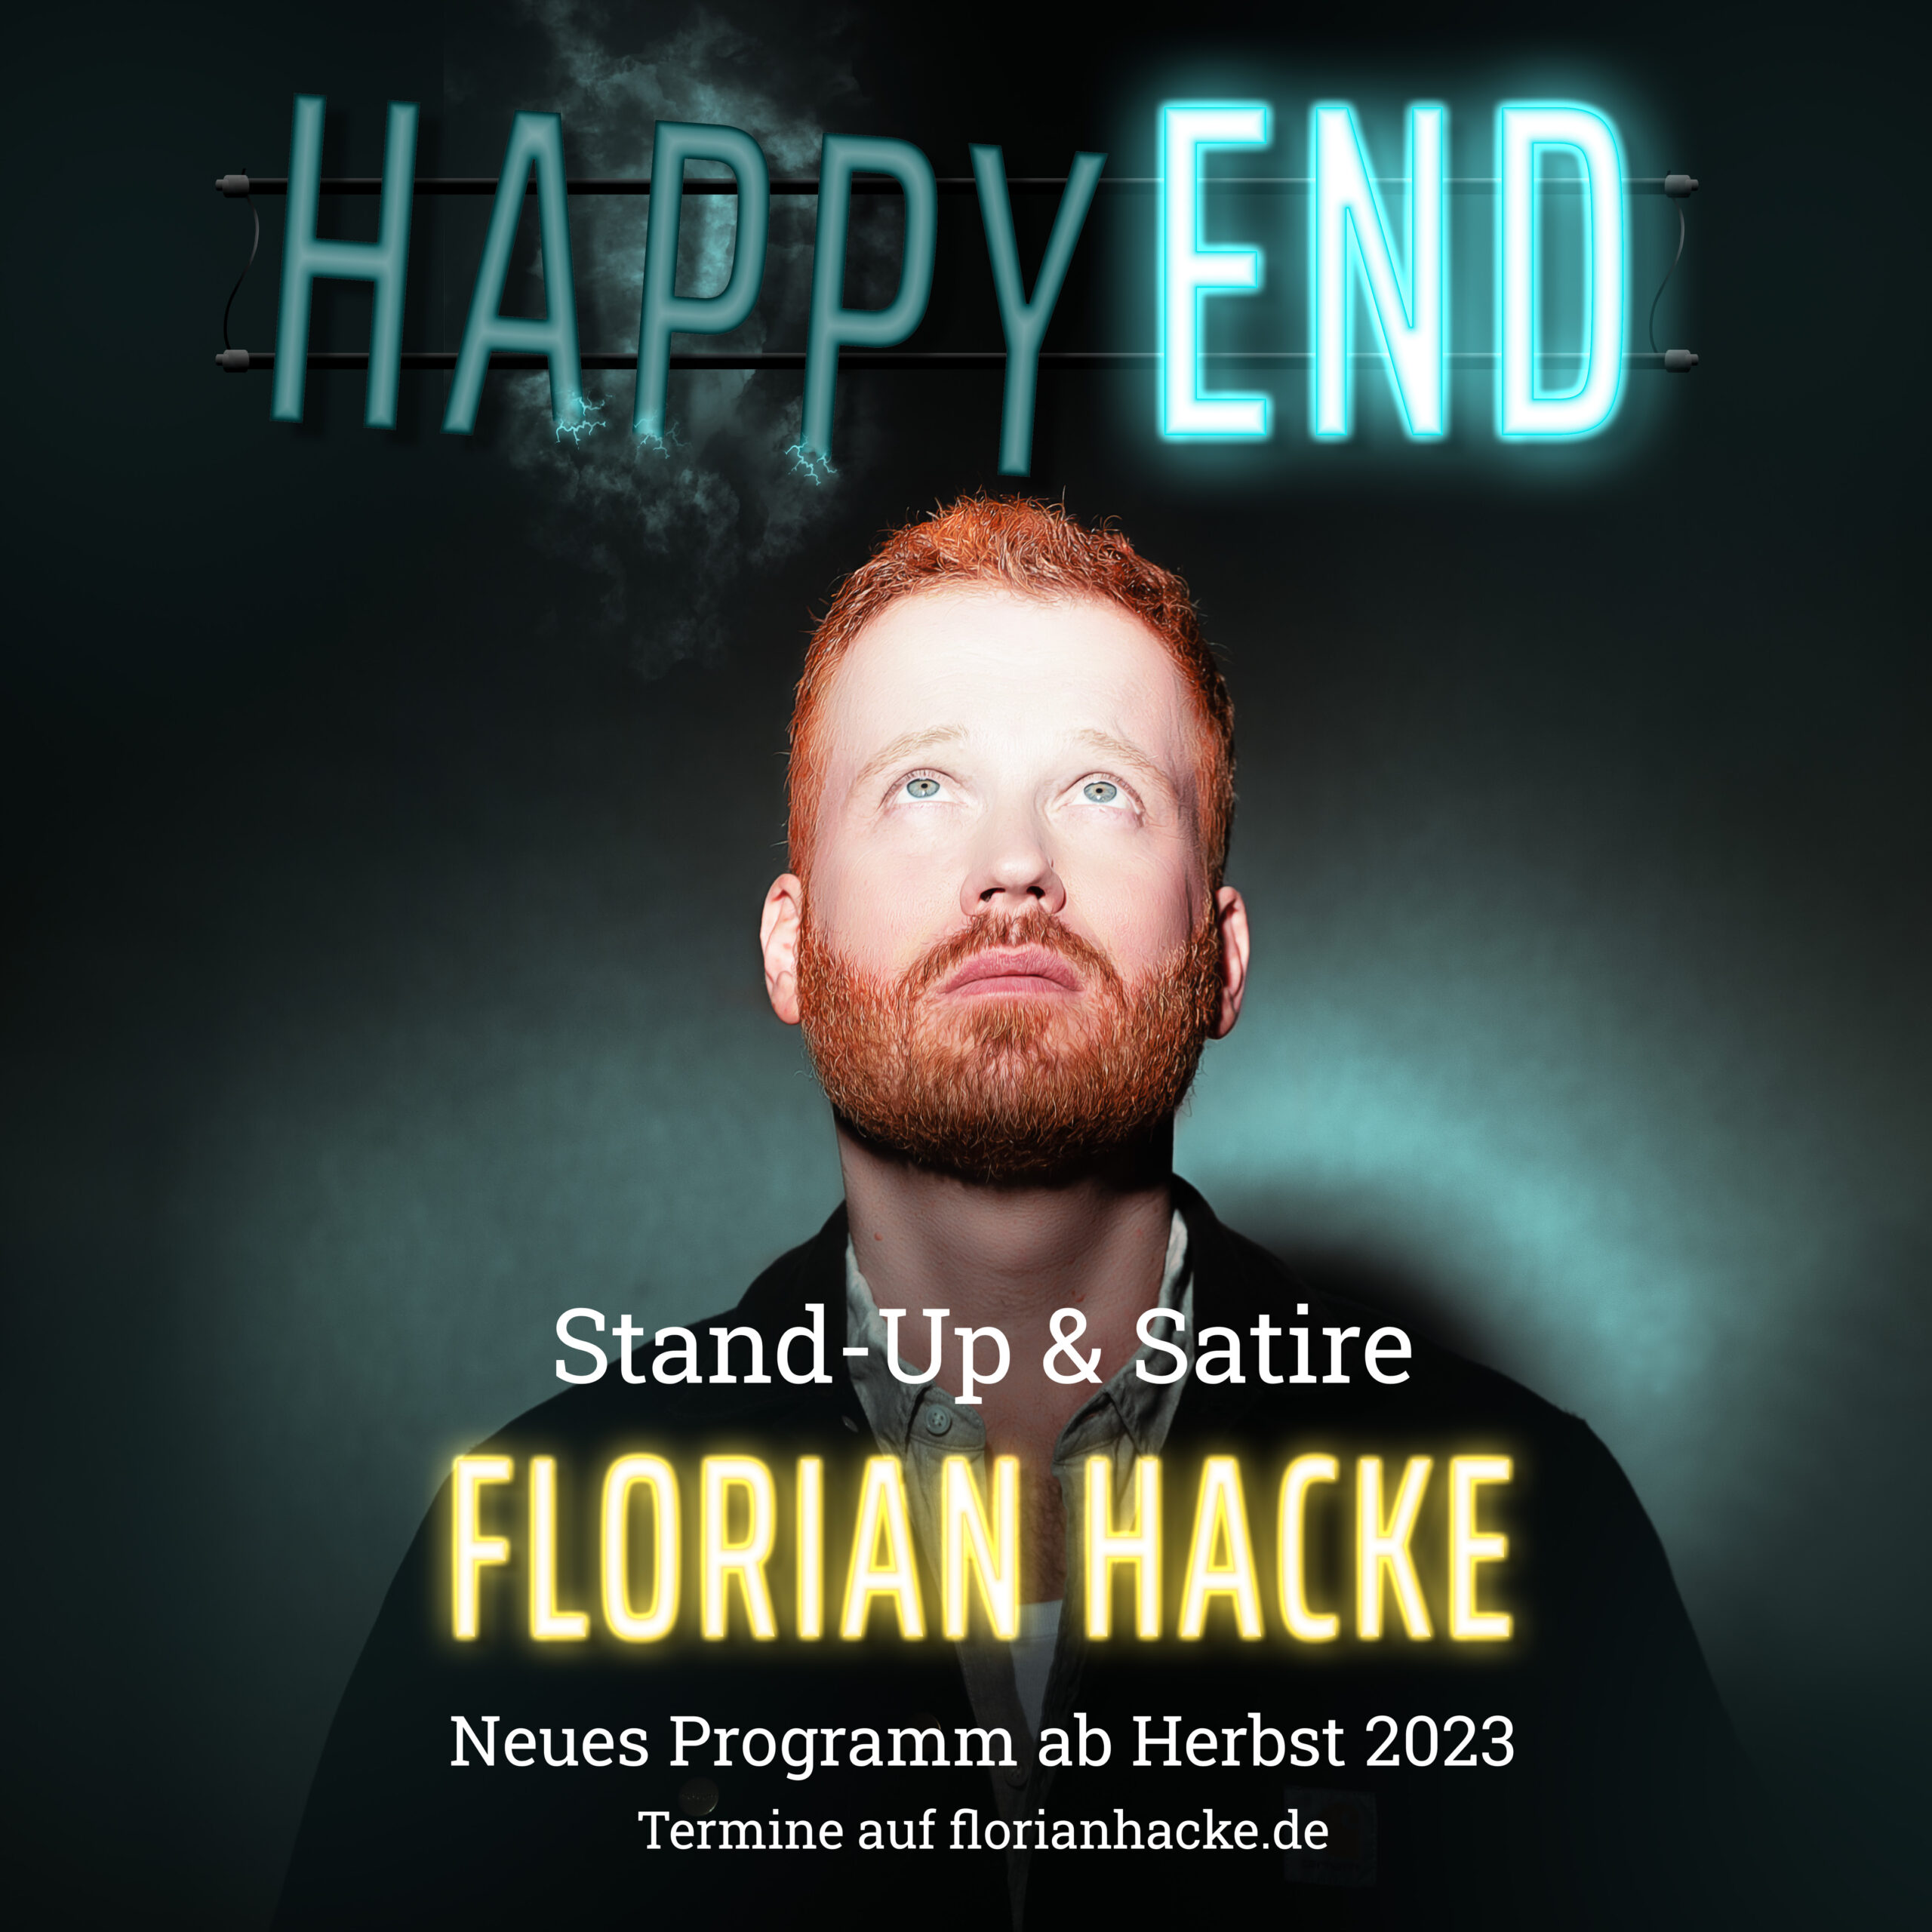 Florian Hacke: Happy End